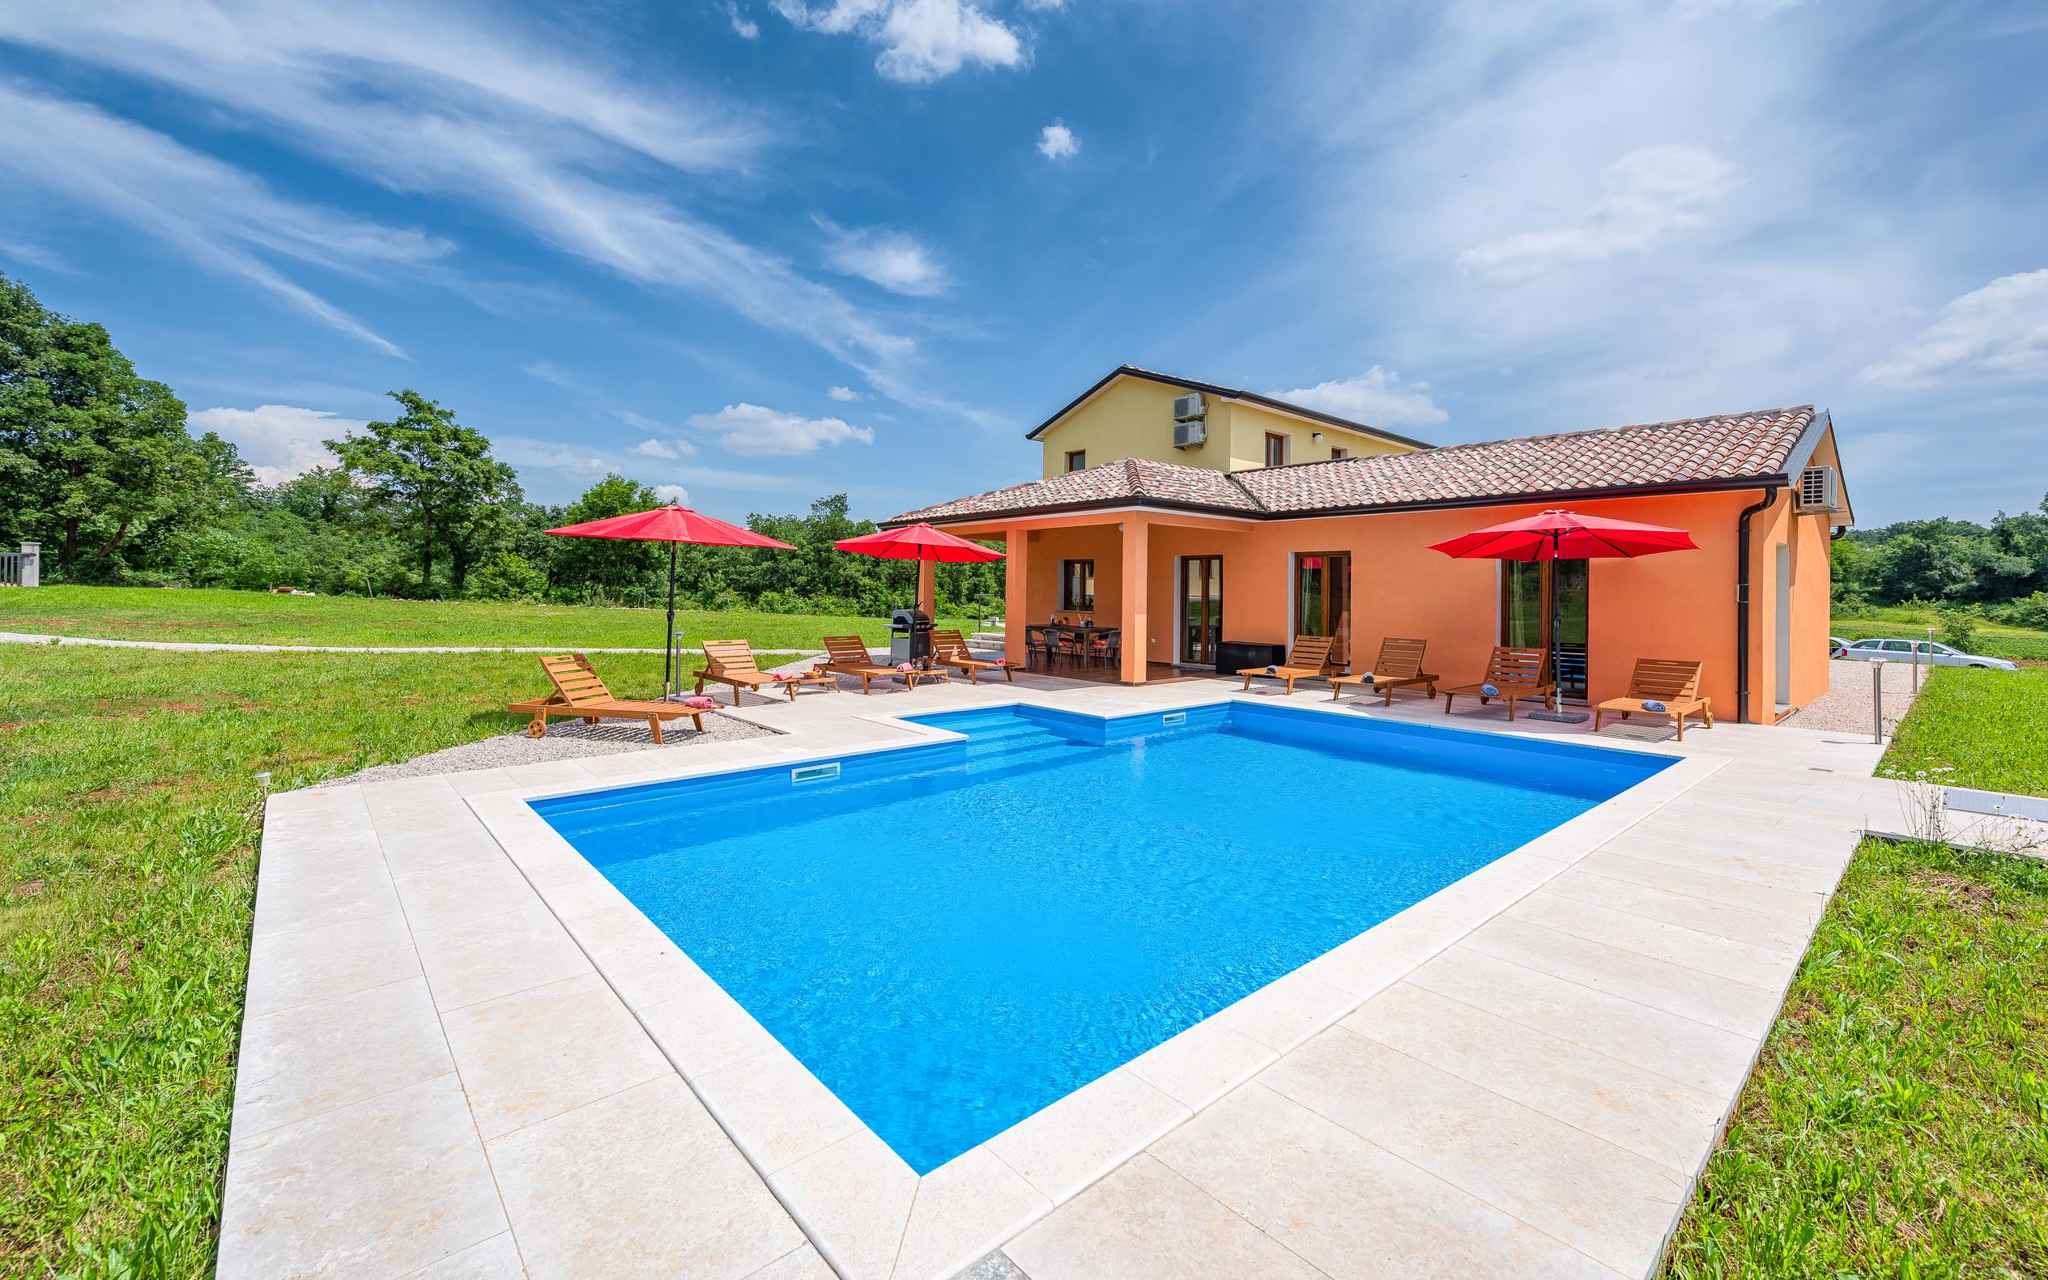 Ferienhaus mit Pool in ruhiger Lage Ferienhaus in Kroatien